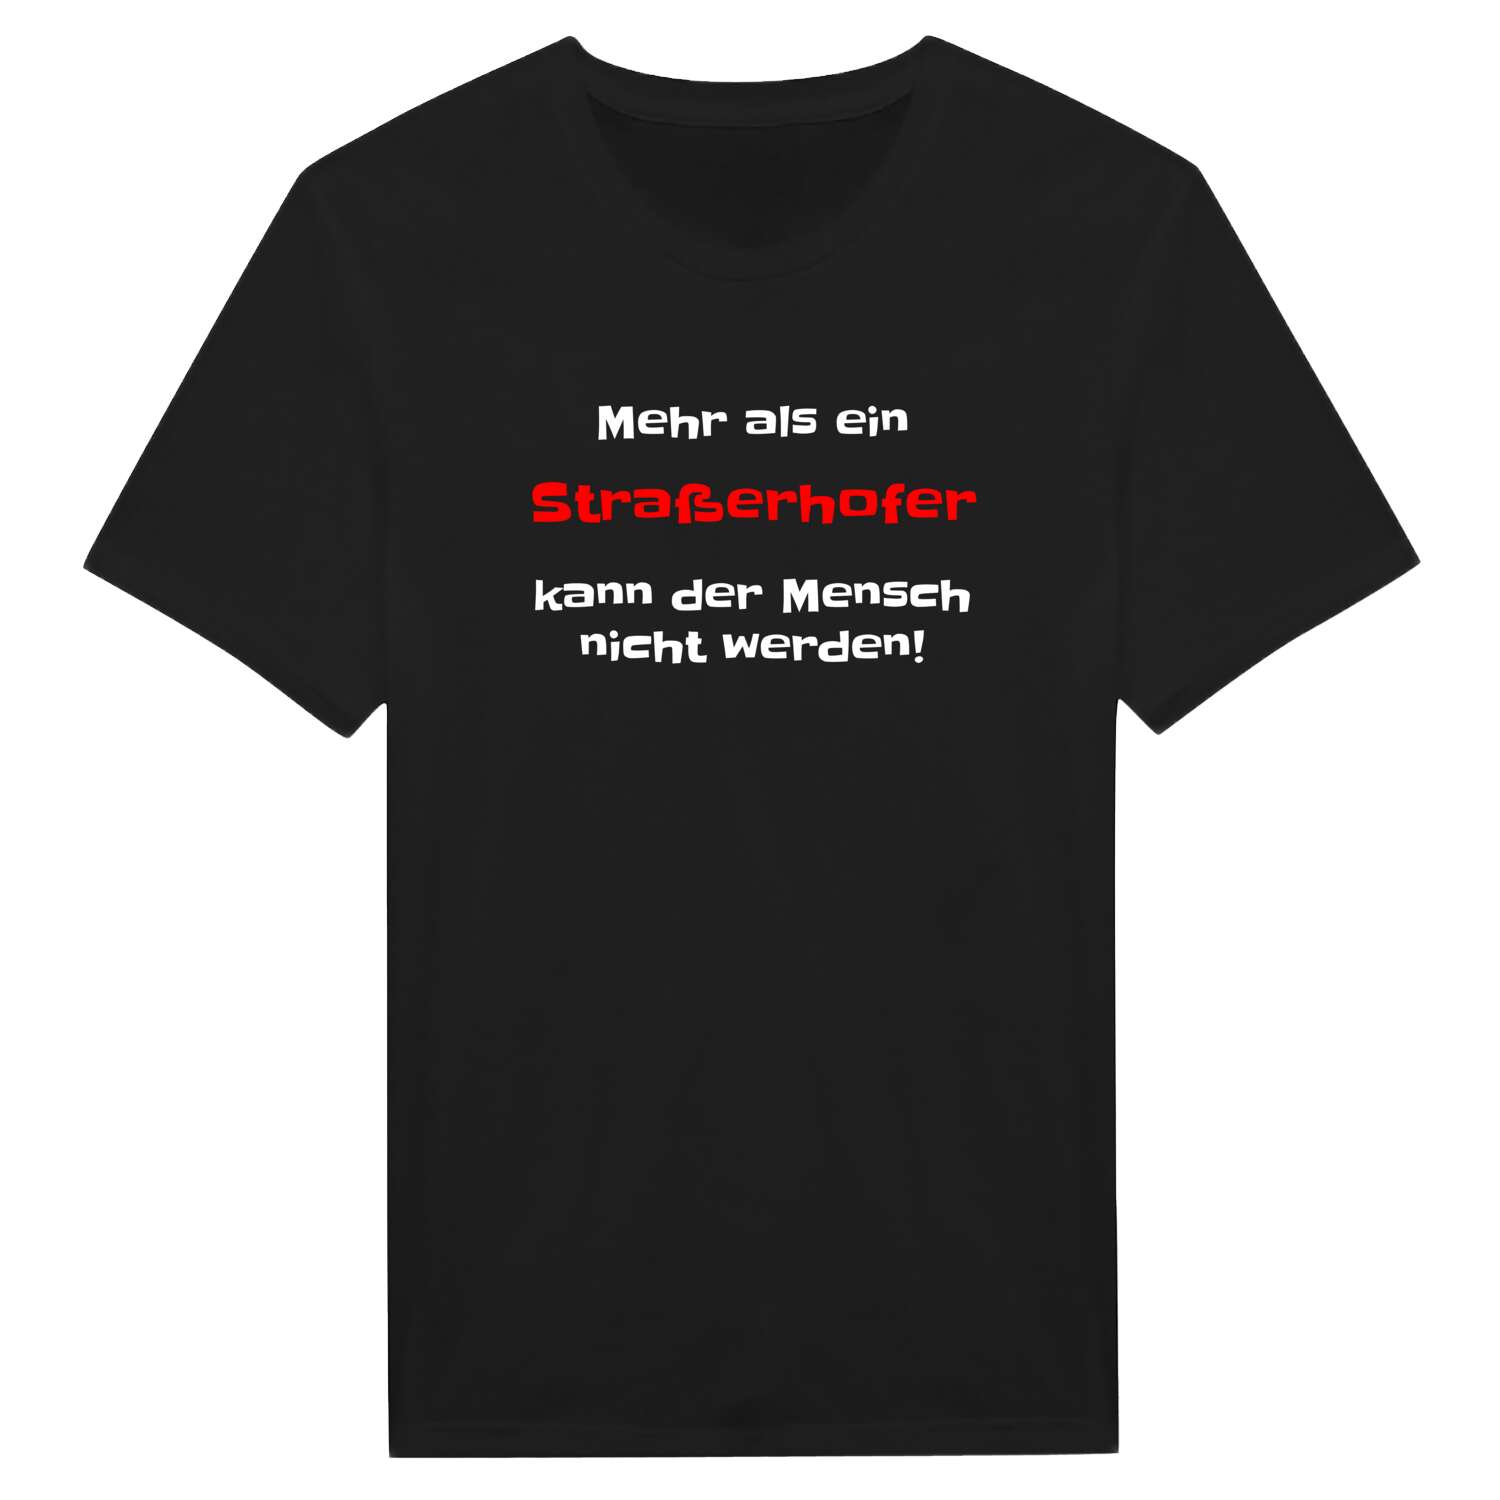 Straßerhof T-Shirt »Mehr als ein«